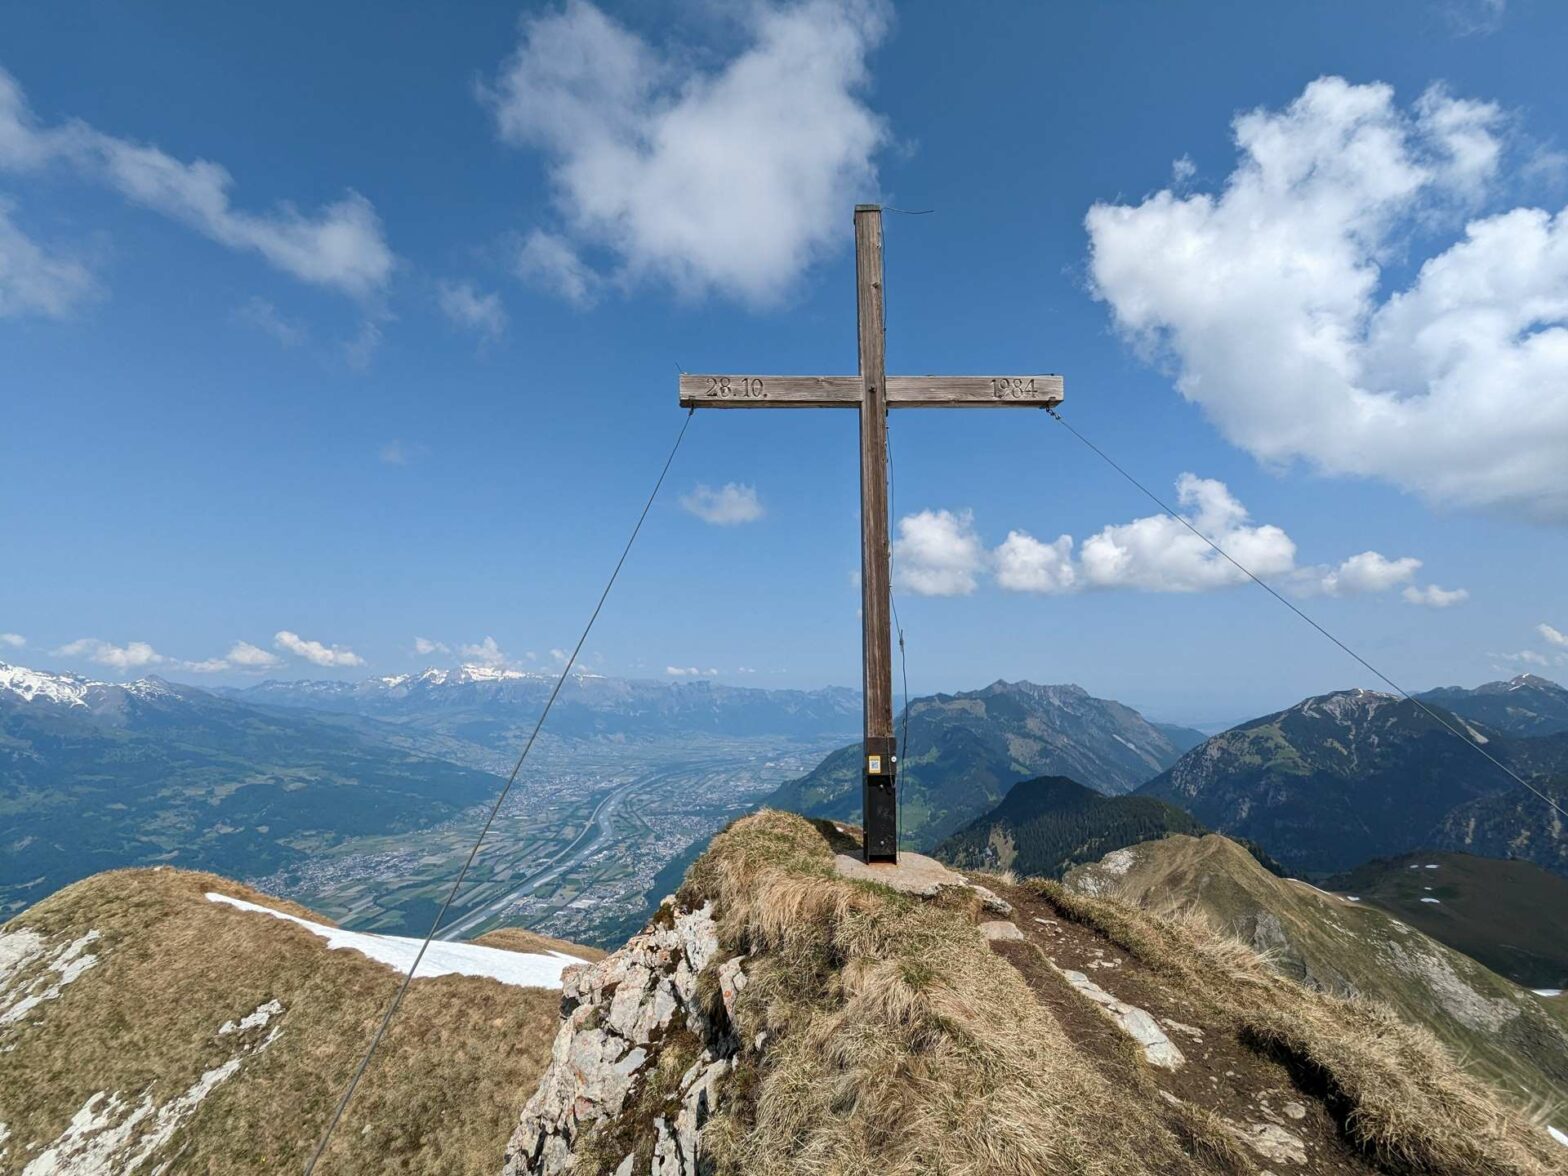 View of mountains from the top of Rappenstein Peak in Liechtenstein